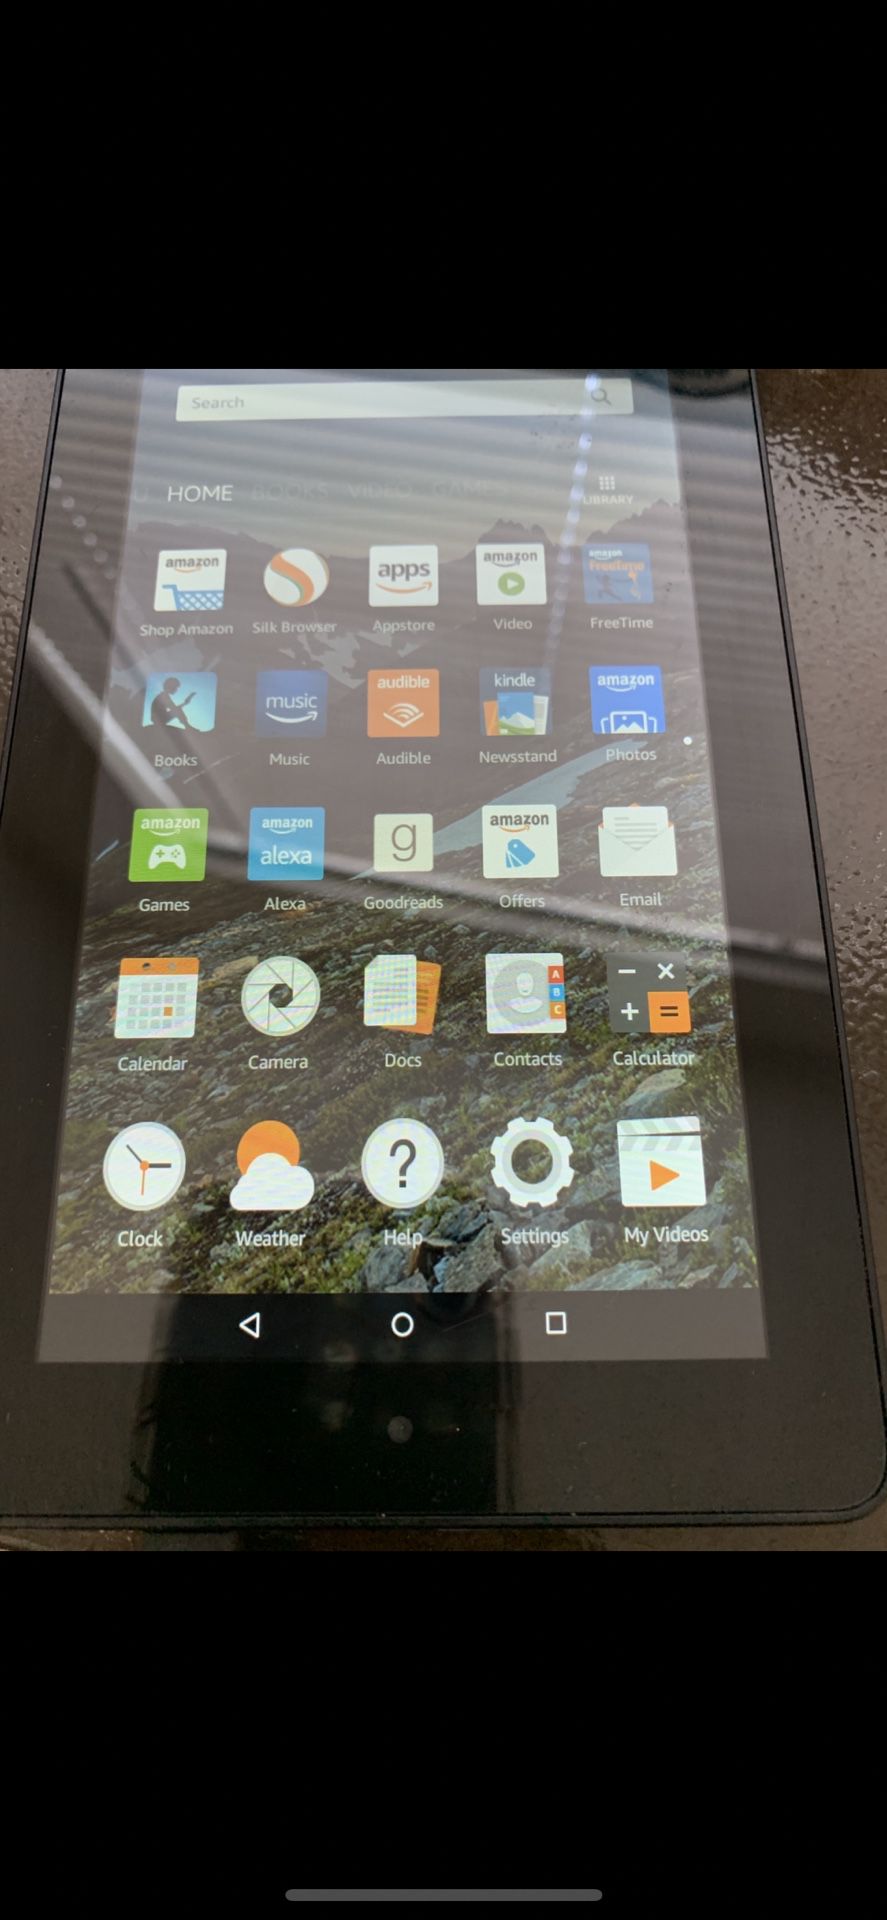 Amazon SV98LN 5th Gen Fire Tablet 7”